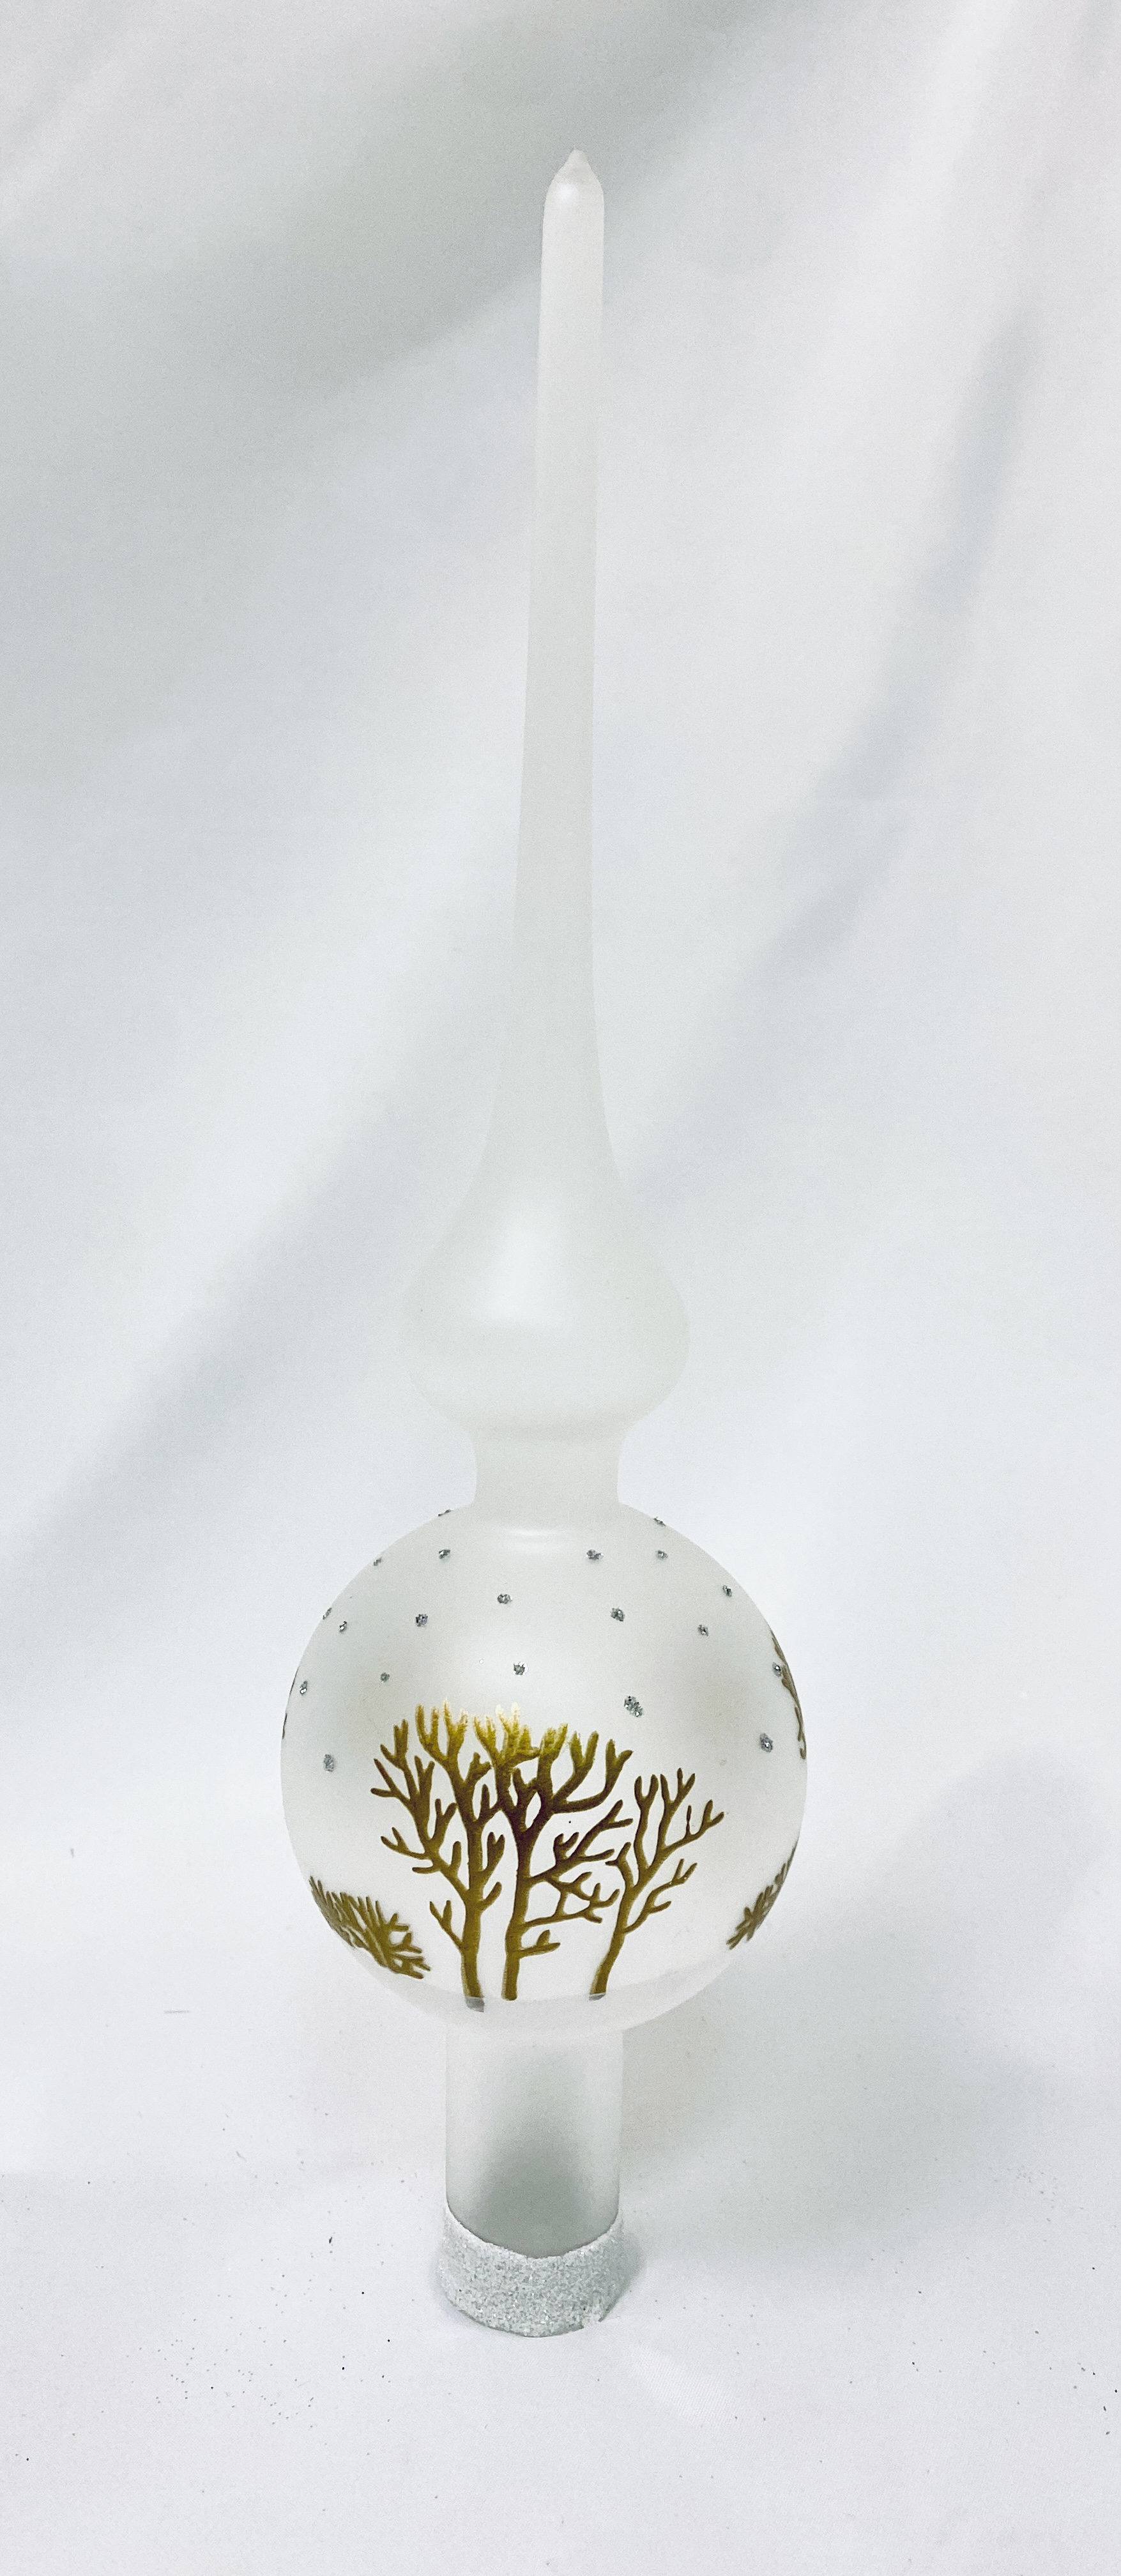 IRISA Skleněná špice s dekorem lesa a padajícího sněhu (28 cm, bílá) Balení: 1ks, Barva: bílá, Velikost: 28 cm